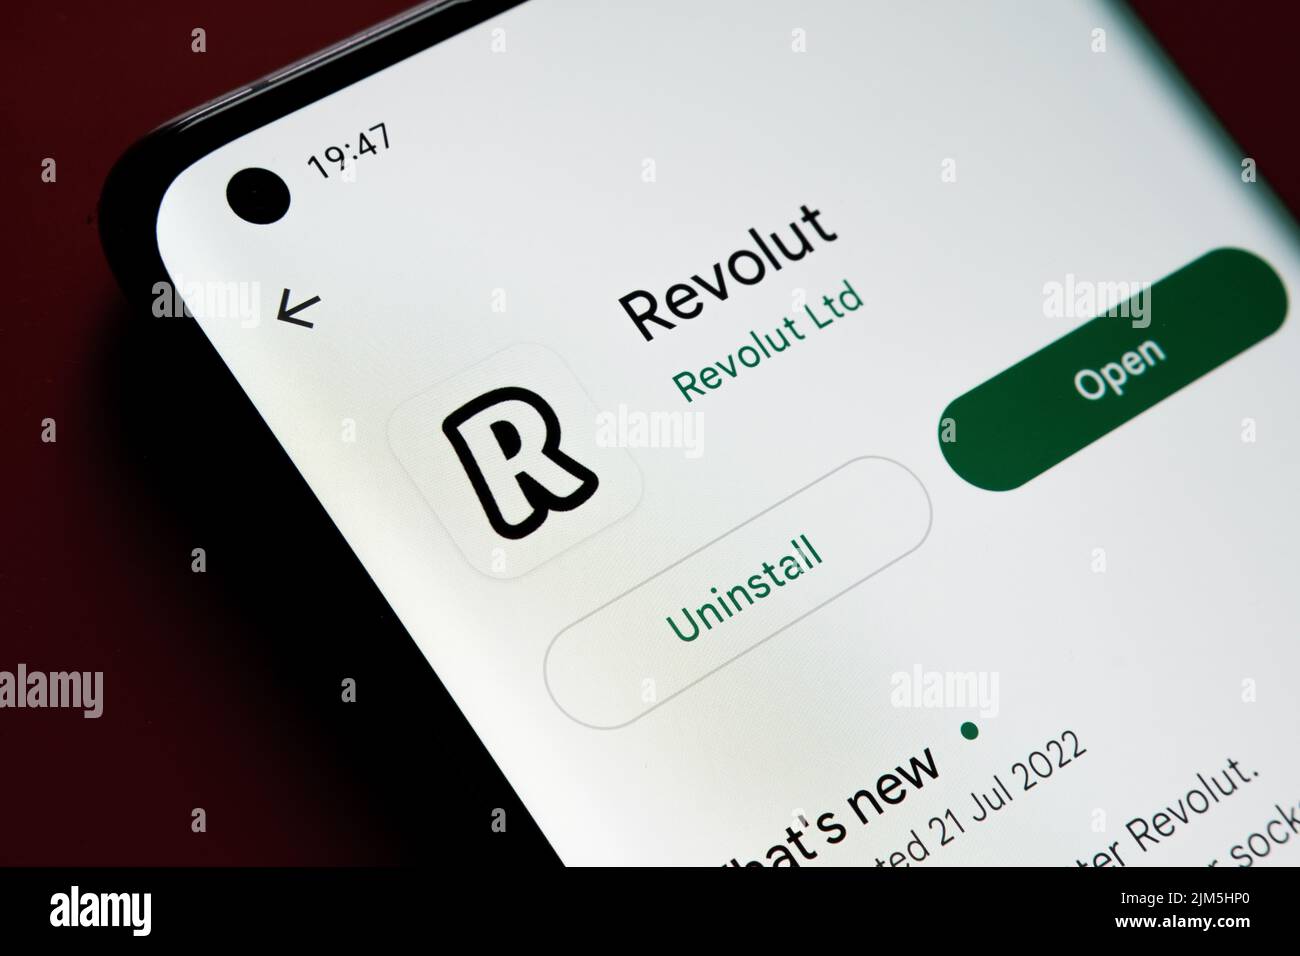 Application Revolut vue dans Google Play Store sur l'écran du smartphone placé sur fond rouge. Gros plan avec mise au point sélective. Stafford, Royaume-Uni Banque D'Images